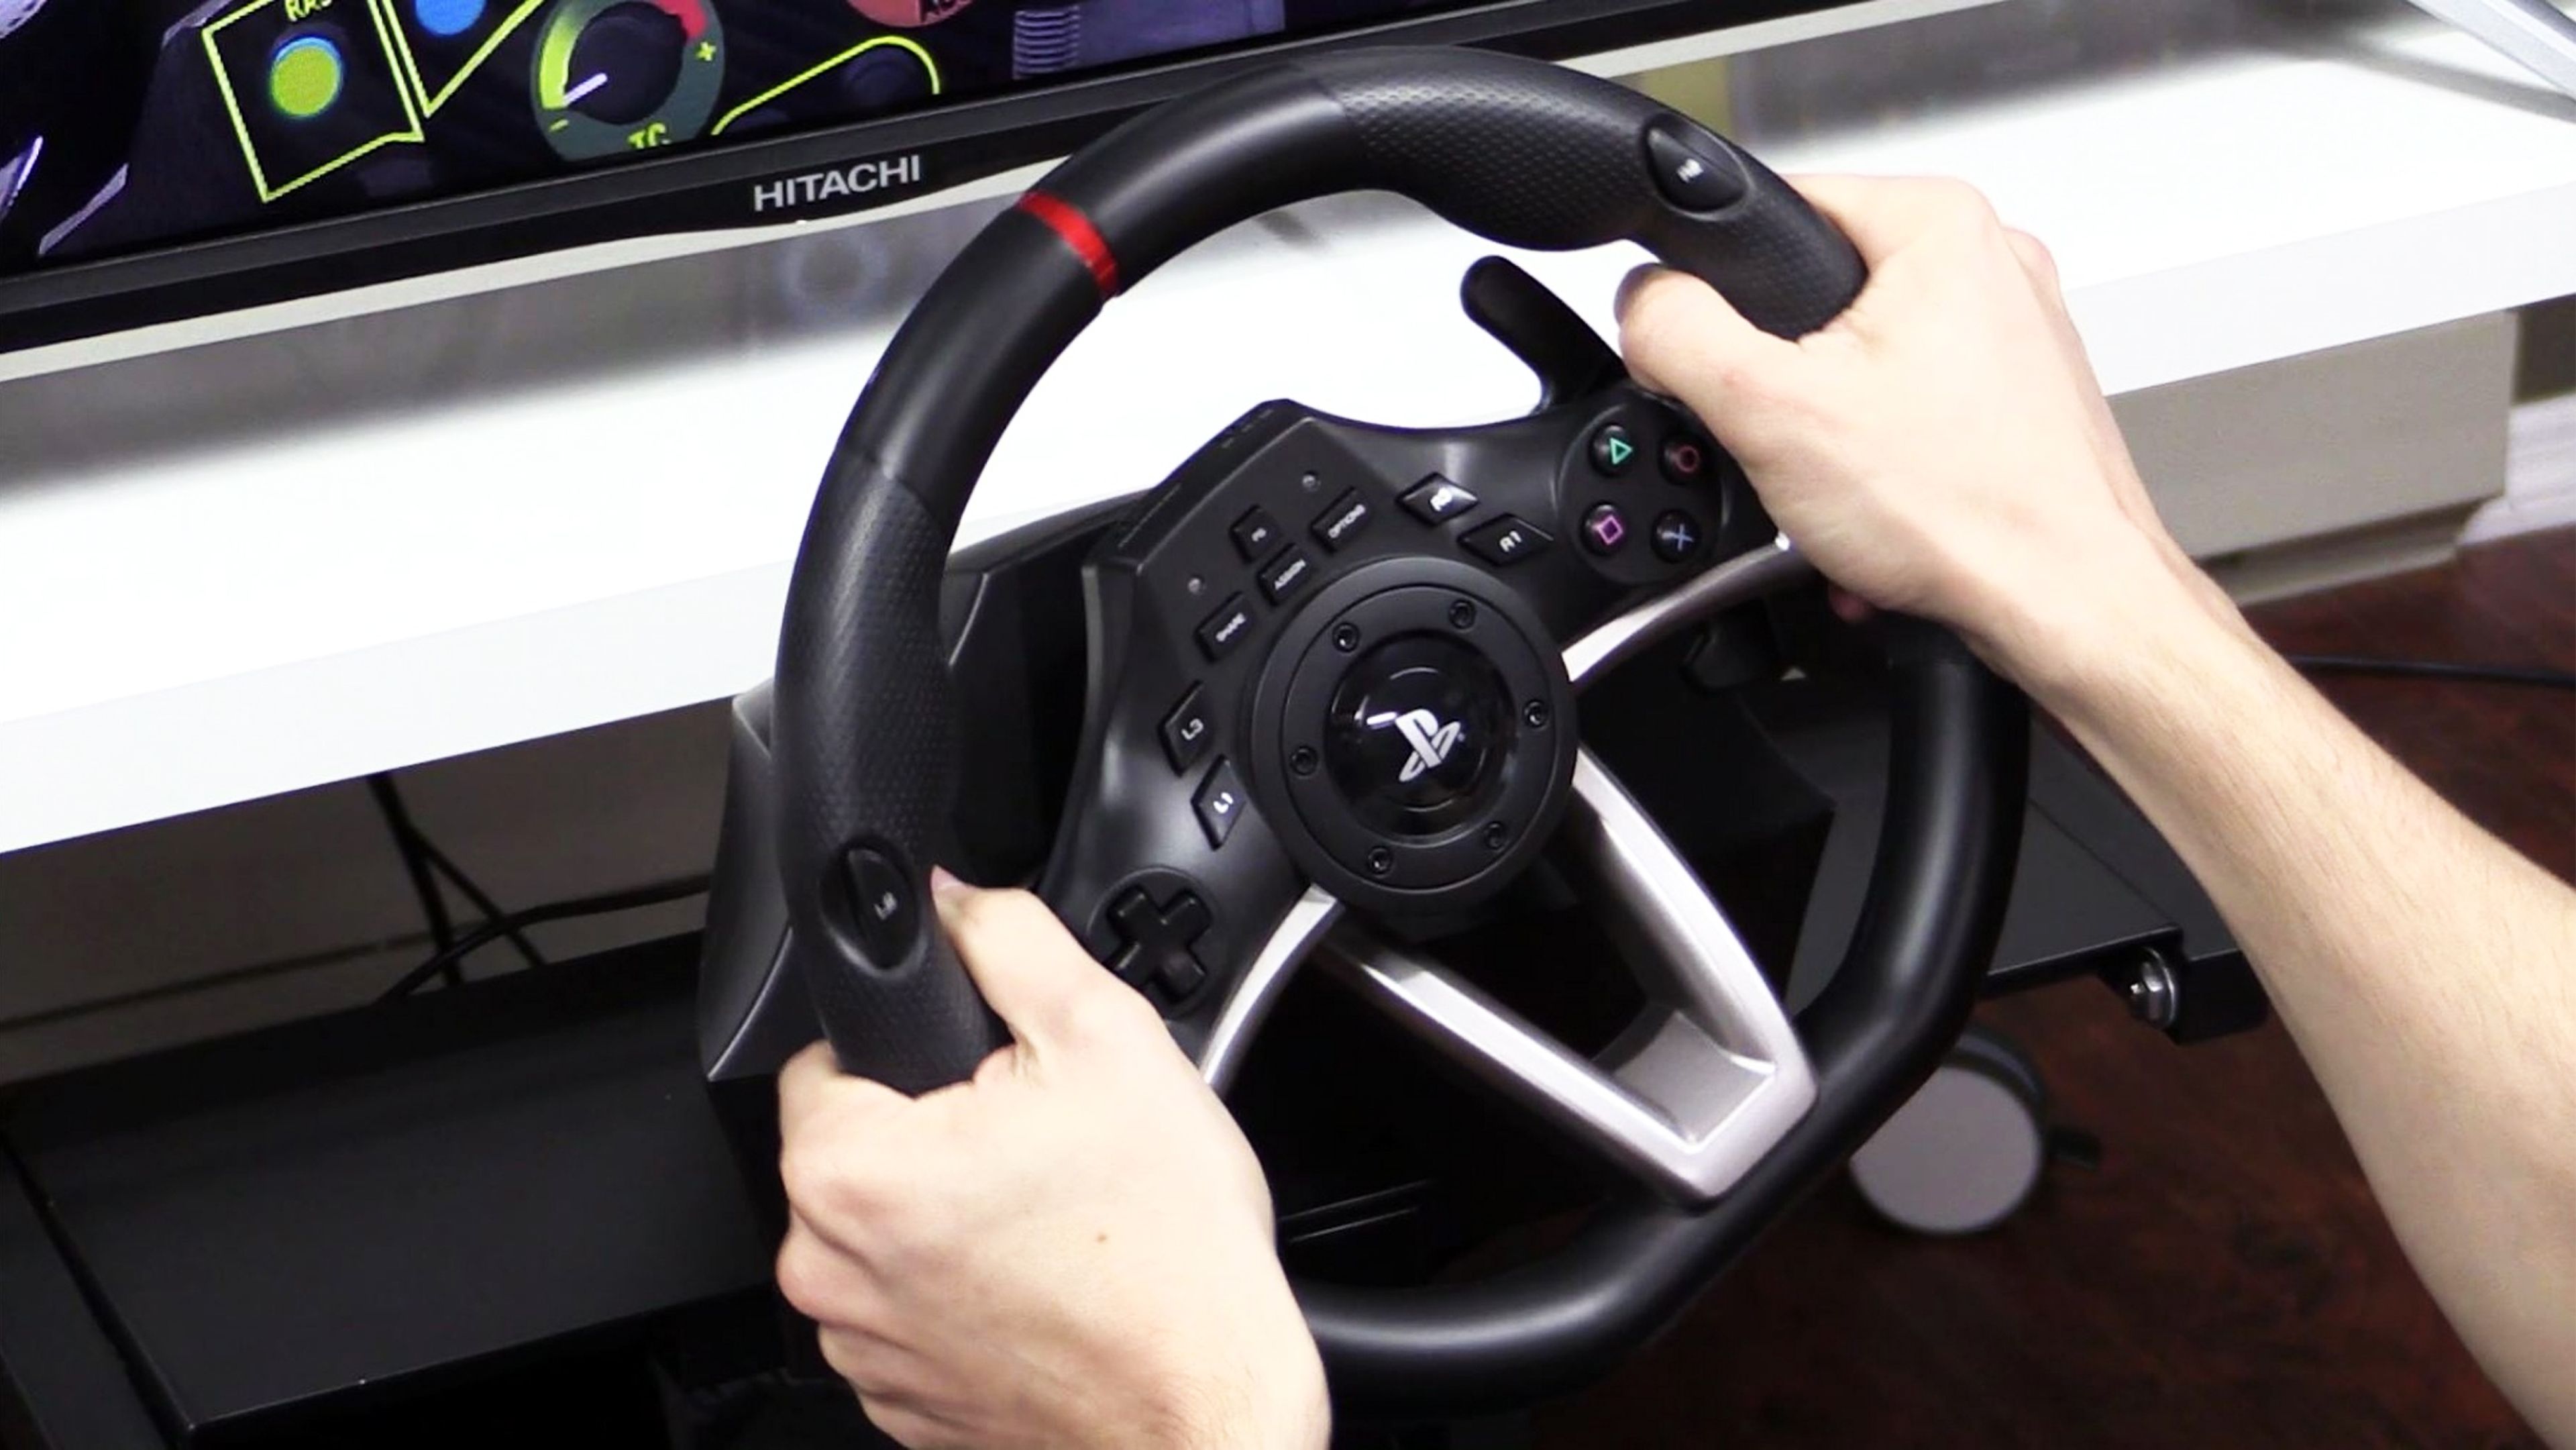 Krom K-Wheel - Comprar volante + pedales PC/PS3/PS4/Xbox barato